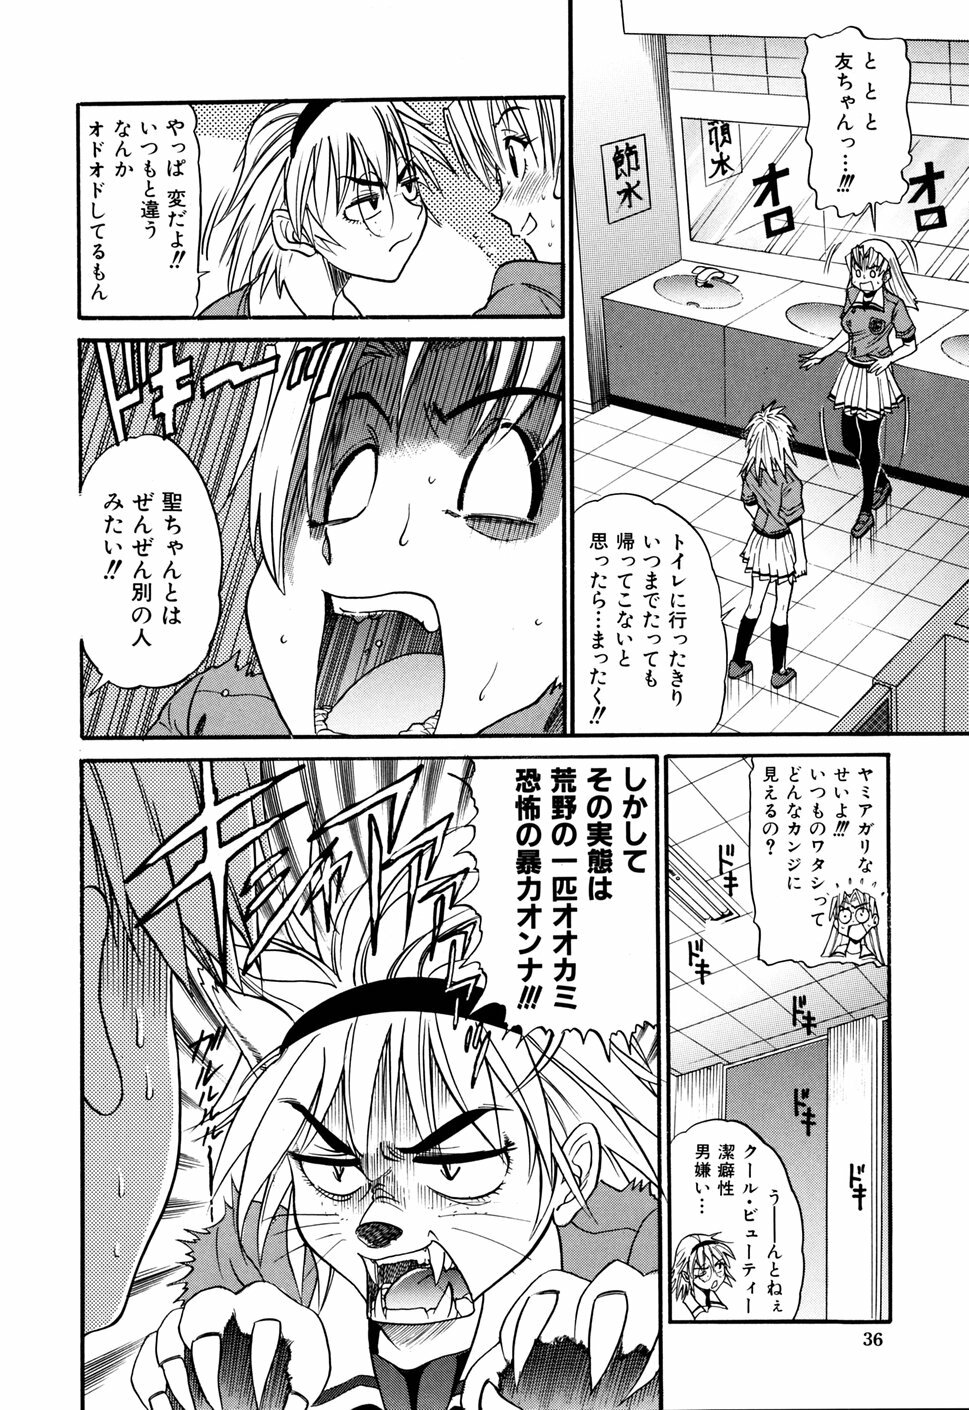 [DISTANCE] Ochiru Tenshi Vol. 1 page 40 full